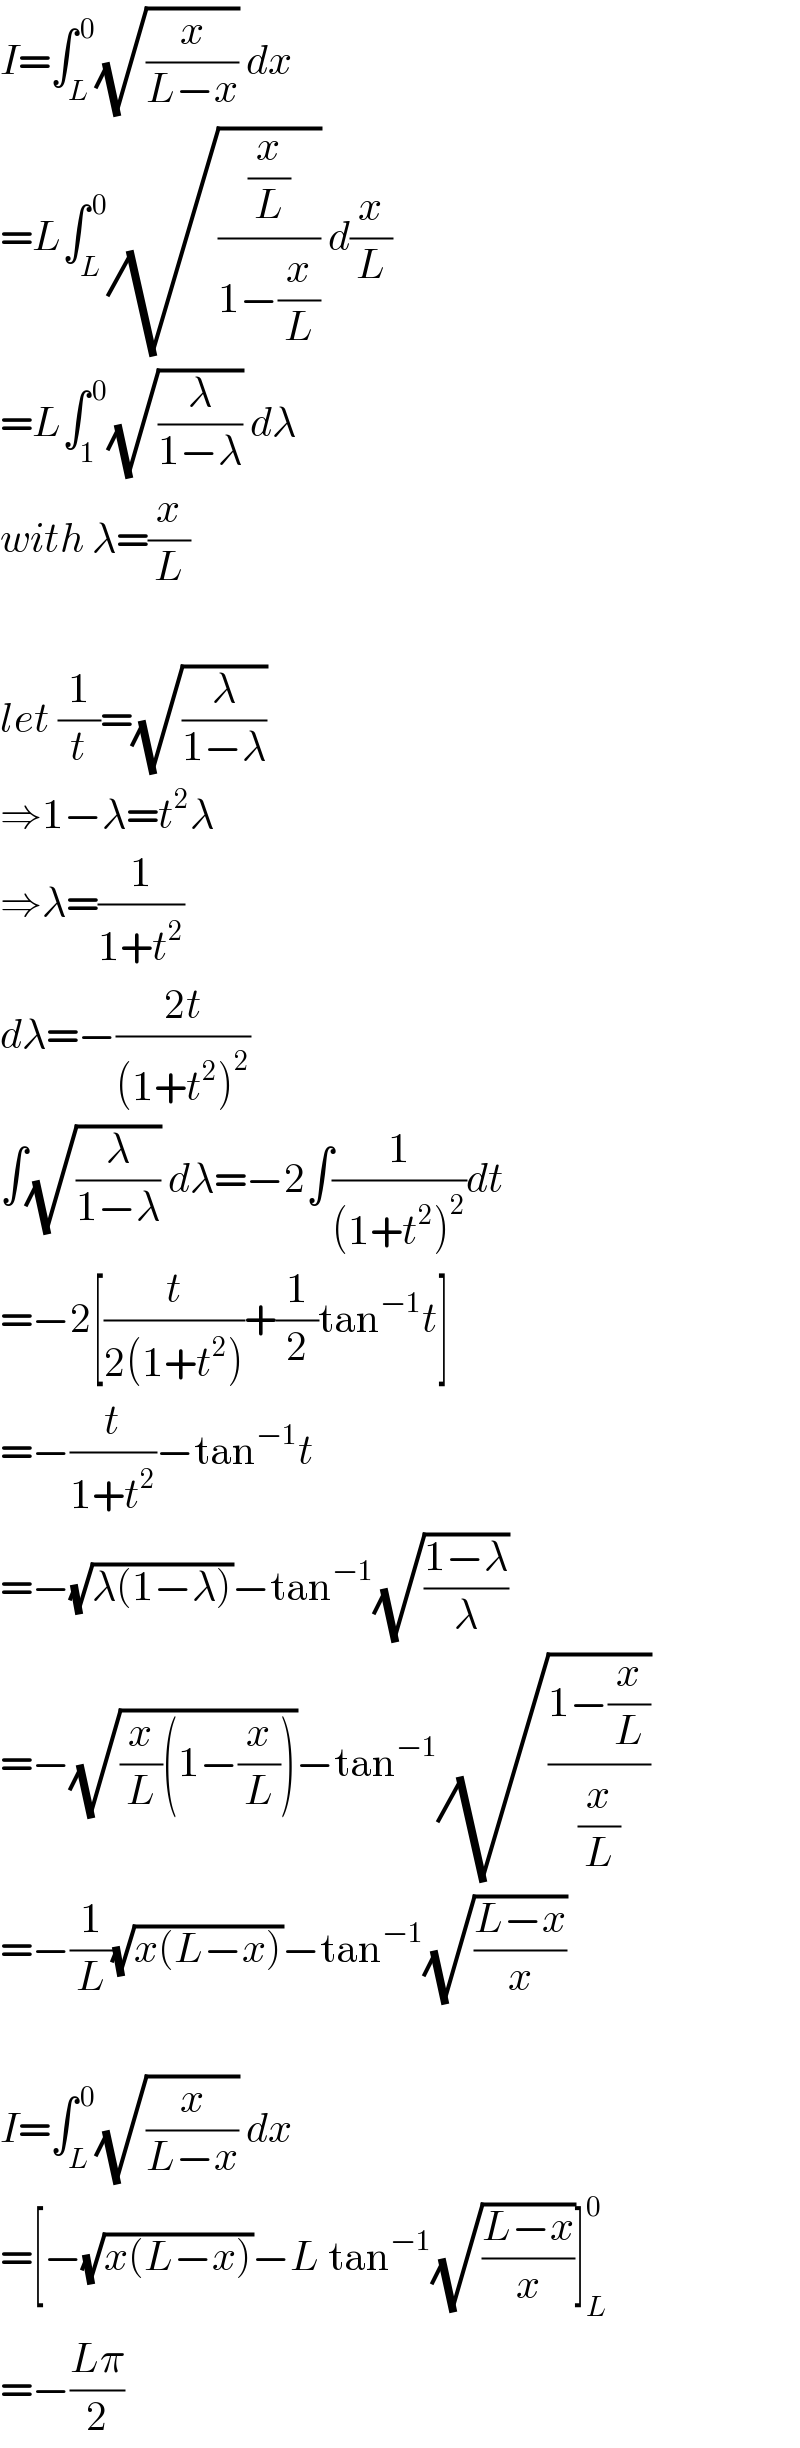 I=∫_L ^( 0) (√(x/(L−x))) dx  =L∫_L ^( 0) (√((x/L)/(1−(x/L)))) d(x/L)  =L∫_1 ^( 0) (√(λ/(1−λ))) dλ  with λ=(x/L)    let (1/t)=(√(λ/(1−λ)))  ⇒1−λ=t^2 λ  ⇒λ=(1/(1+t^2 ))  dλ=−((2t)/((1+t^2 )^2 ))  ∫(√(λ/(1−λ))) dλ=−2∫(1/((1+t^2 )^2 ))dt  =−2[(t/(2(1+t^2 )))+(1/2)tan^(−1) t]  =−(t/(1+t^2 ))−tan^(−1) t  =−(√(λ(1−λ)))−tan^(−1) (√((1−λ)/λ))  =−(√((x/L)(1−(x/L))))−tan^(−1) (√((1−(x/L))/(x/L)))  =−(1/L)(√(x(L−x)))−tan^(−1) (√((L−x)/x))    I=∫_L ^( 0) (√(x/(L−x))) dx  =[−(√(x(L−x)))−L tan^(−1) (√((L−x)/x))]_L ^0   =−((Lπ)/2)  